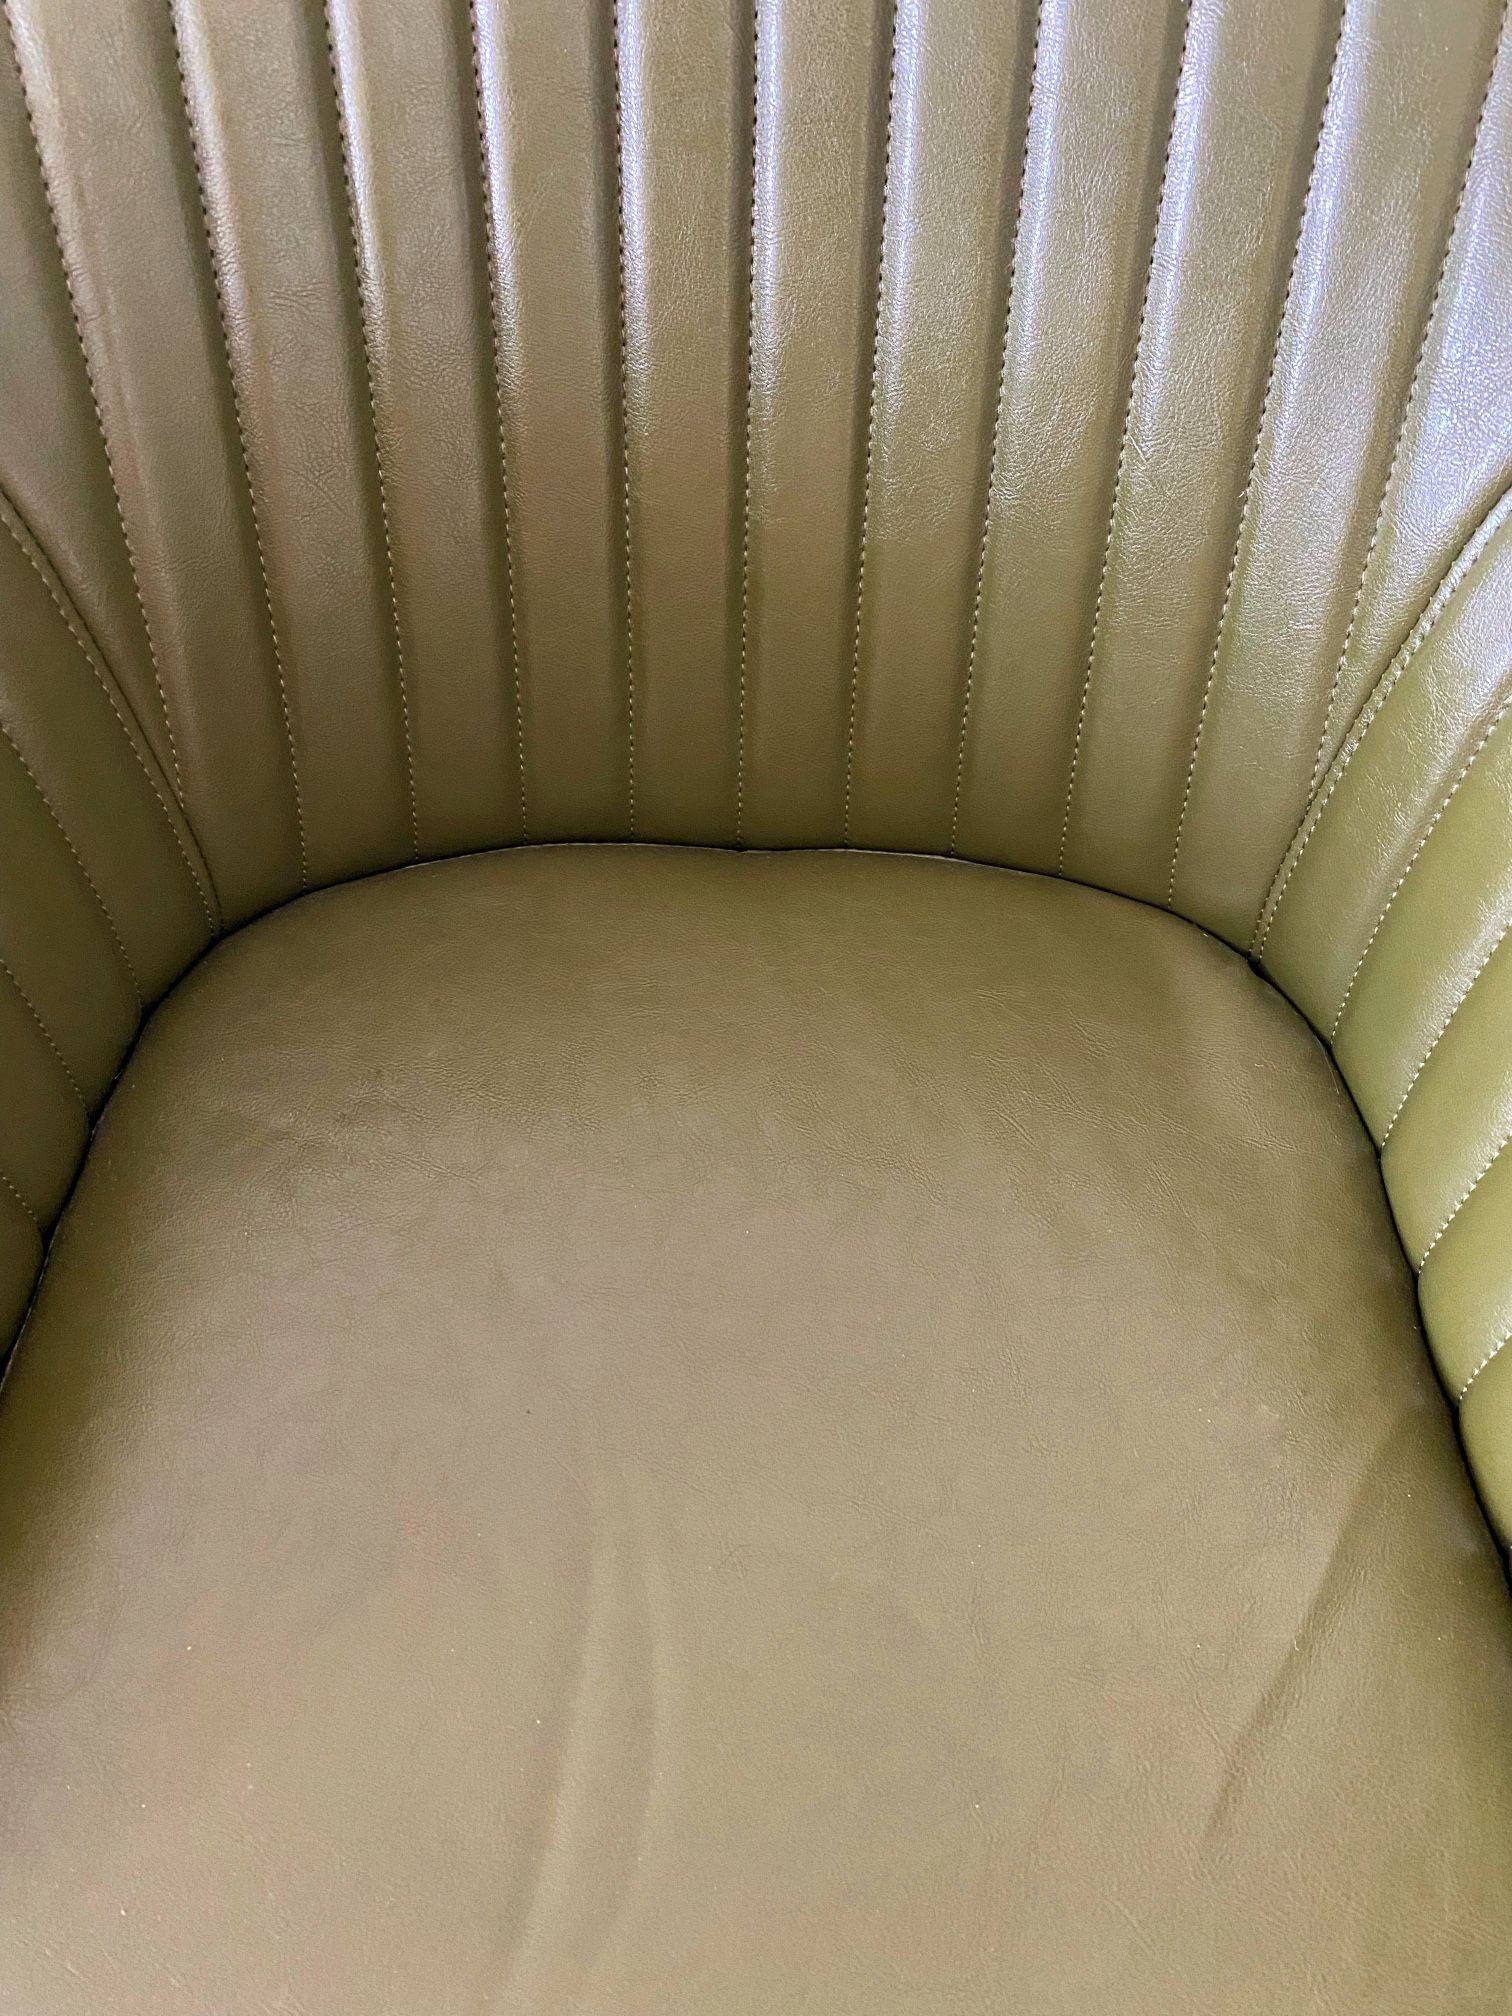 BRAND NEW mid-century green modern office chair W/ Free Linen Pillow